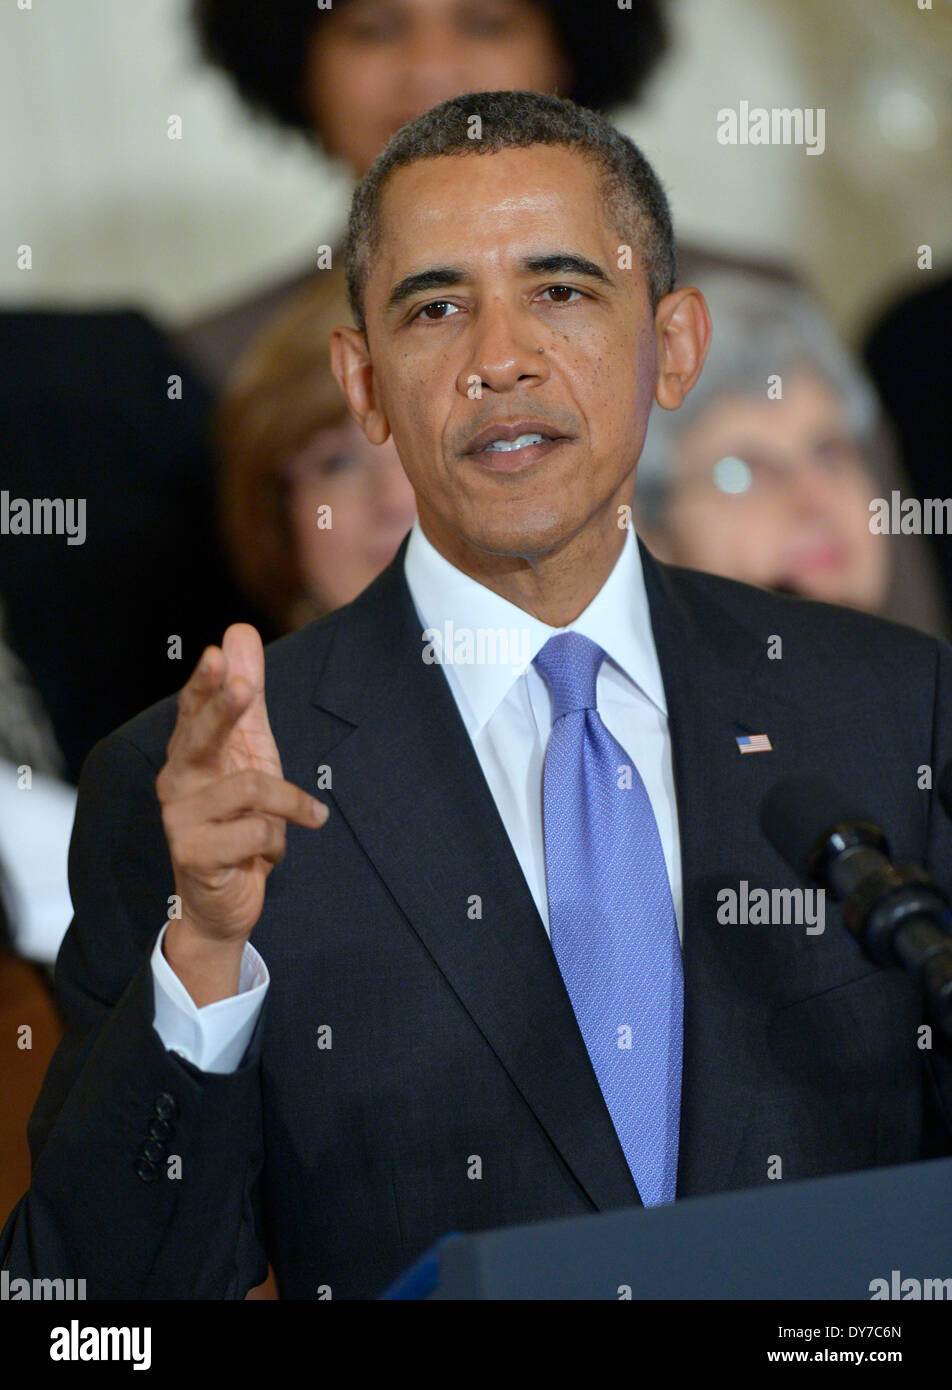 Washington, DC, Stati Uniti d'America. 8 apr, 2014. Stati Uniti Il presidente Barack Obama parla prima della firma di un memorandum avanzando pagare la parità per le donne nella Casa Bianca a Washington DC, Aprile 8, 2014. Credito: Yin Bogu/Xinhua/Alamy Live News Foto Stock